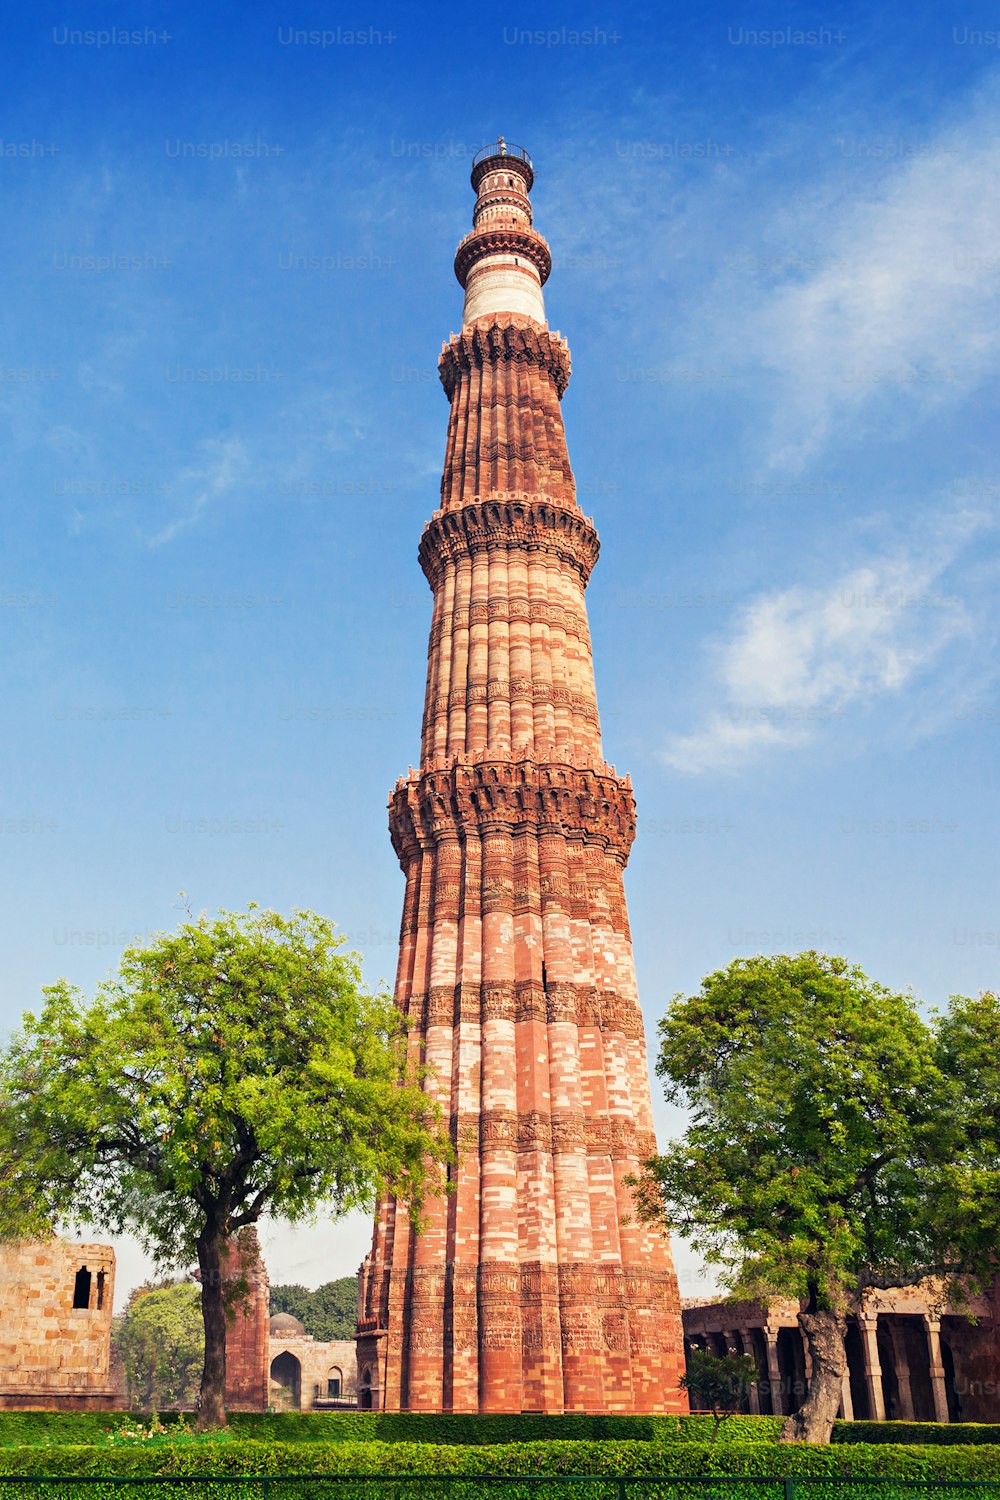 クトゥブミナールタワー、ニューデリー、インド